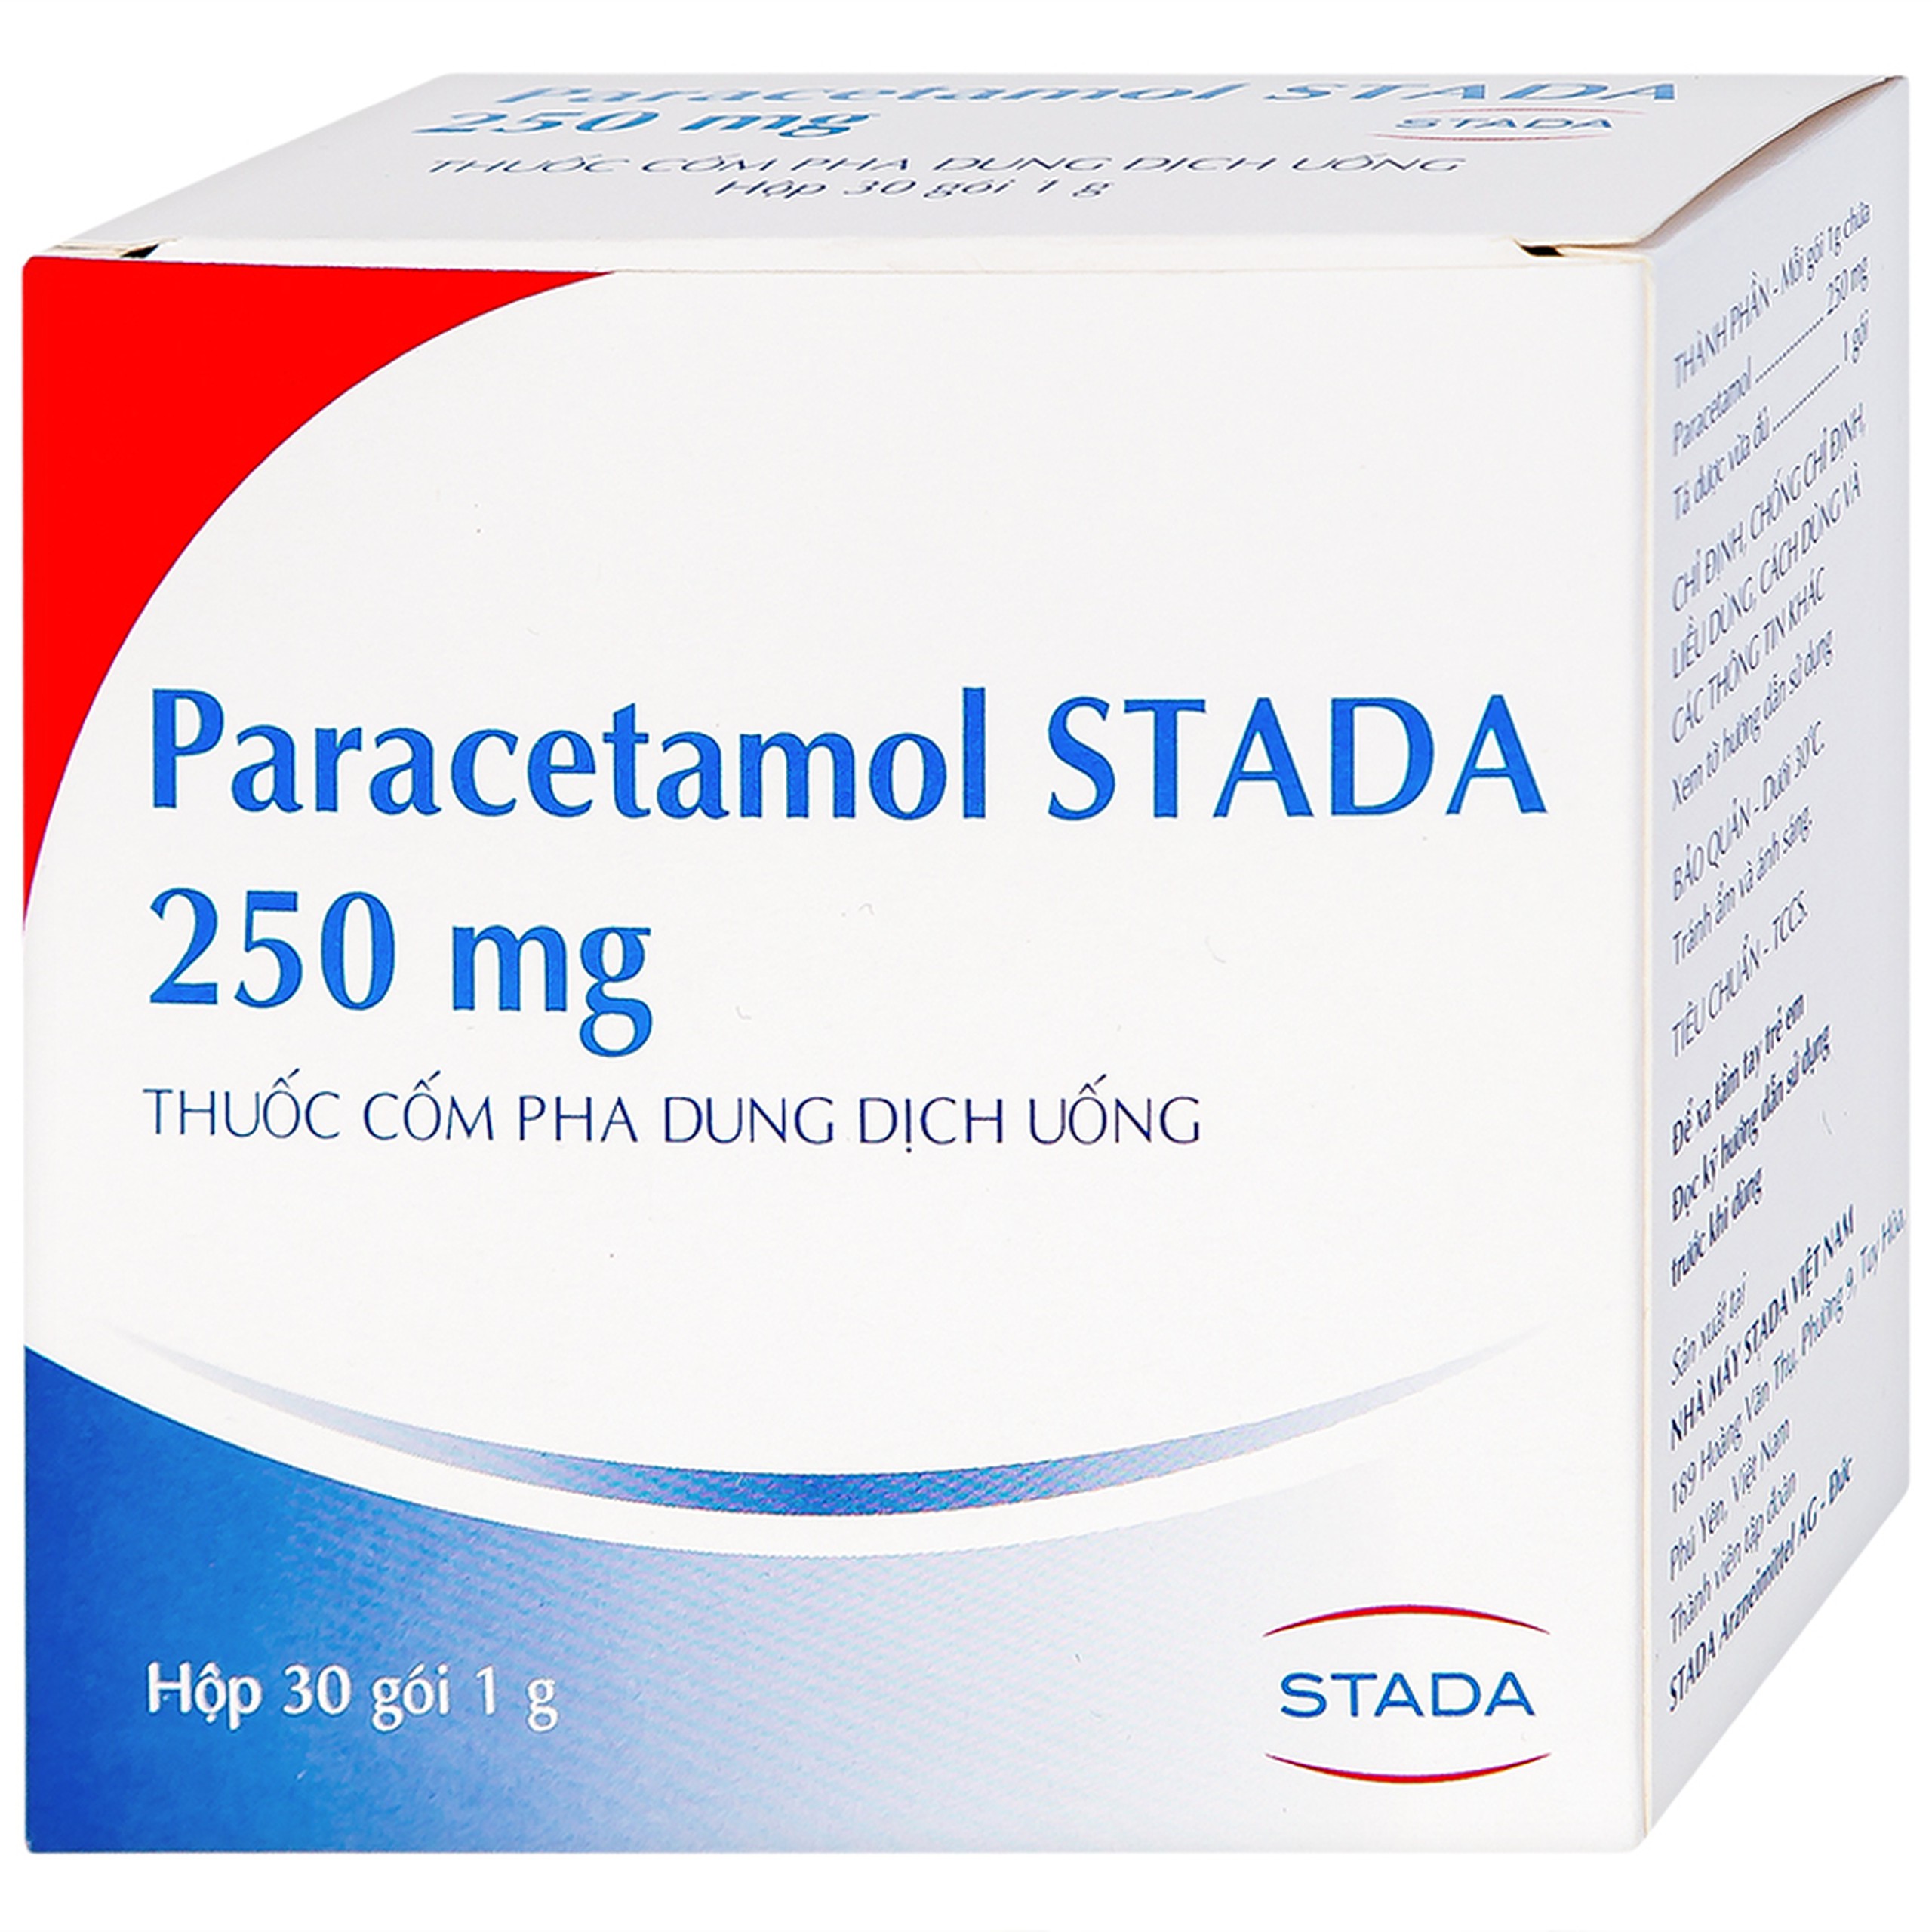 Cốm Paracetamol Stada 250mg điều trị các cơn đau do cảm cúm, nhức đầu, đau họng (30 gói x 1g)